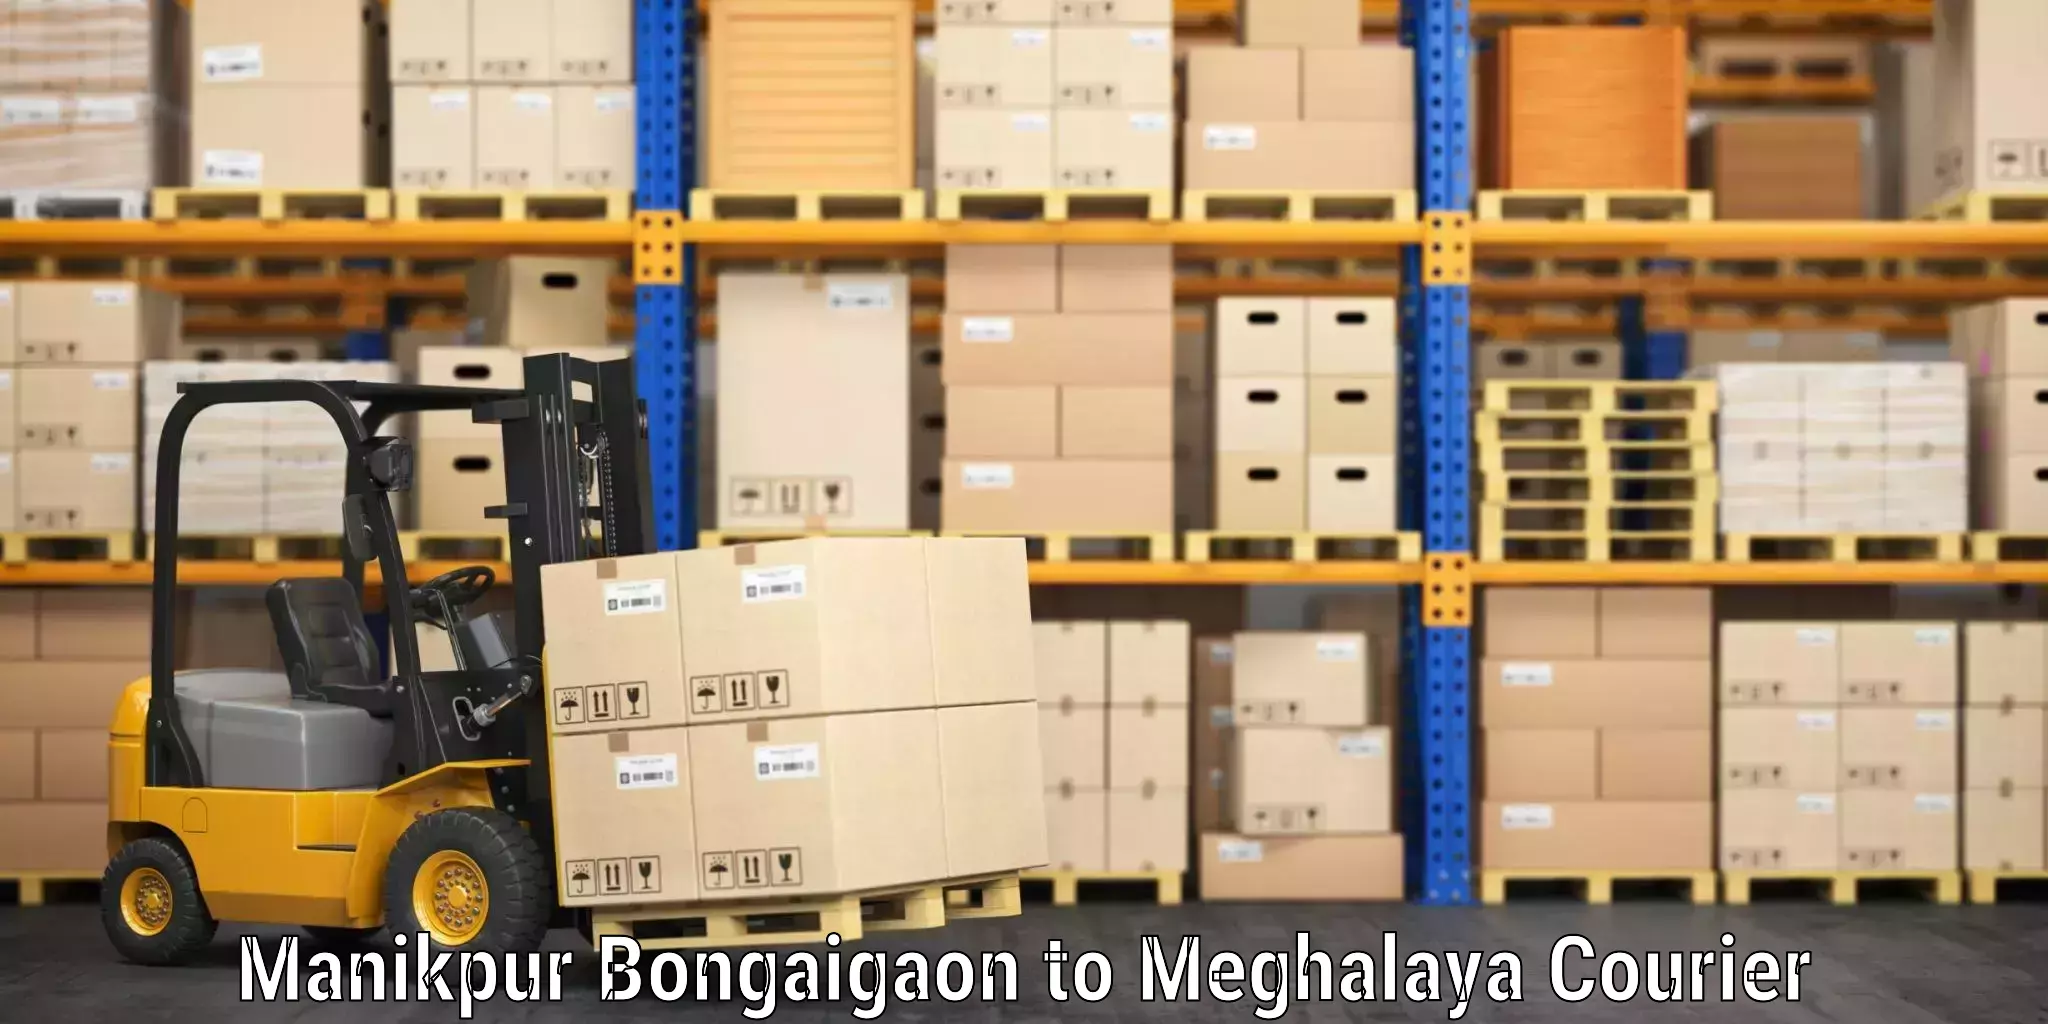 Baggage shipping service Manikpur Bongaigaon to Williamnagar